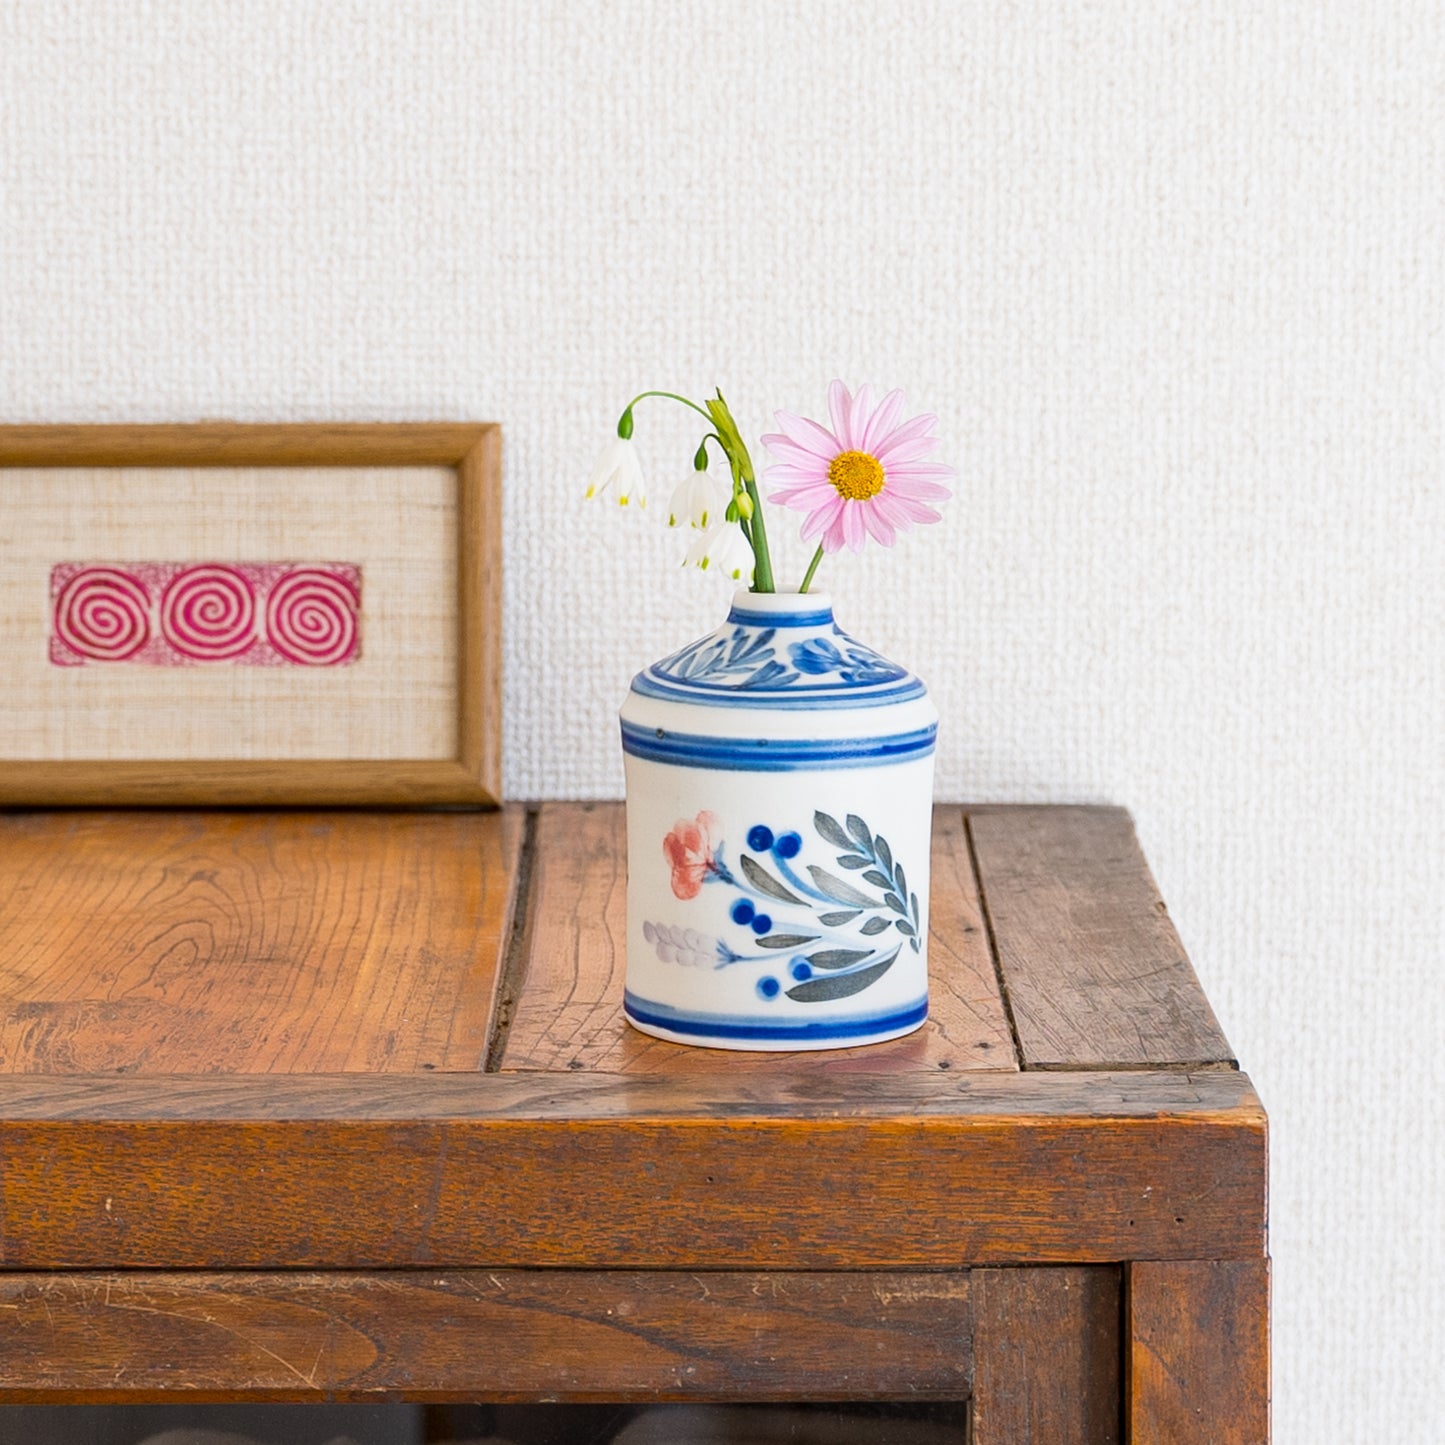 お部屋の雰囲気がぐっと華やかになる田中志保さんの花模様の花器